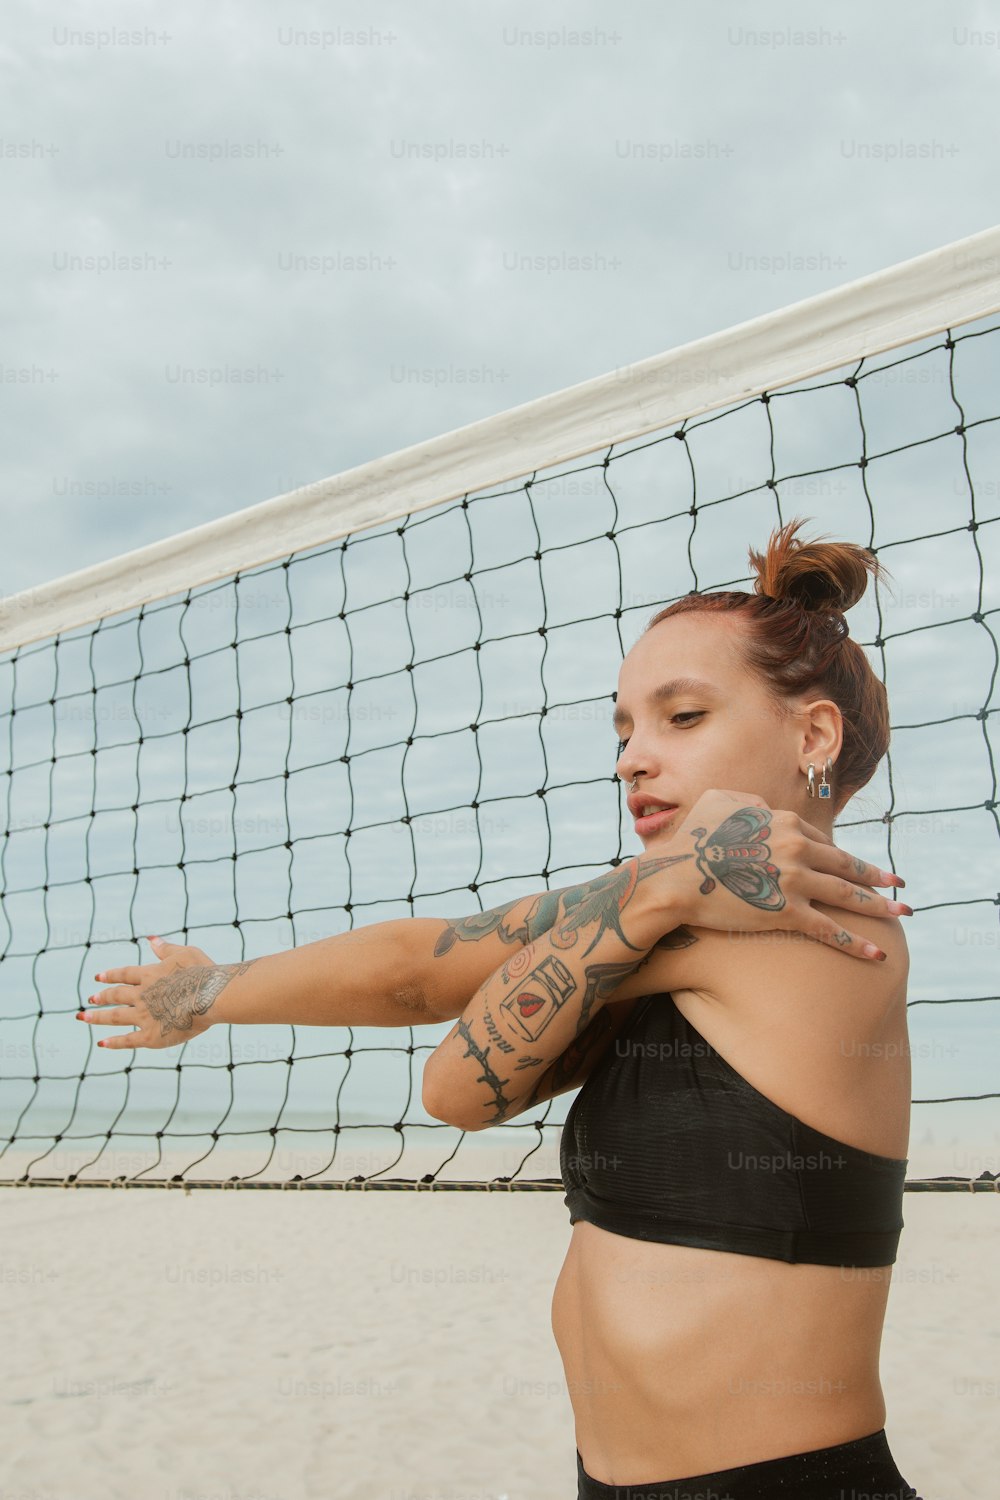 バレーボールのネットの前に立つ腕に入れ墨をした女性